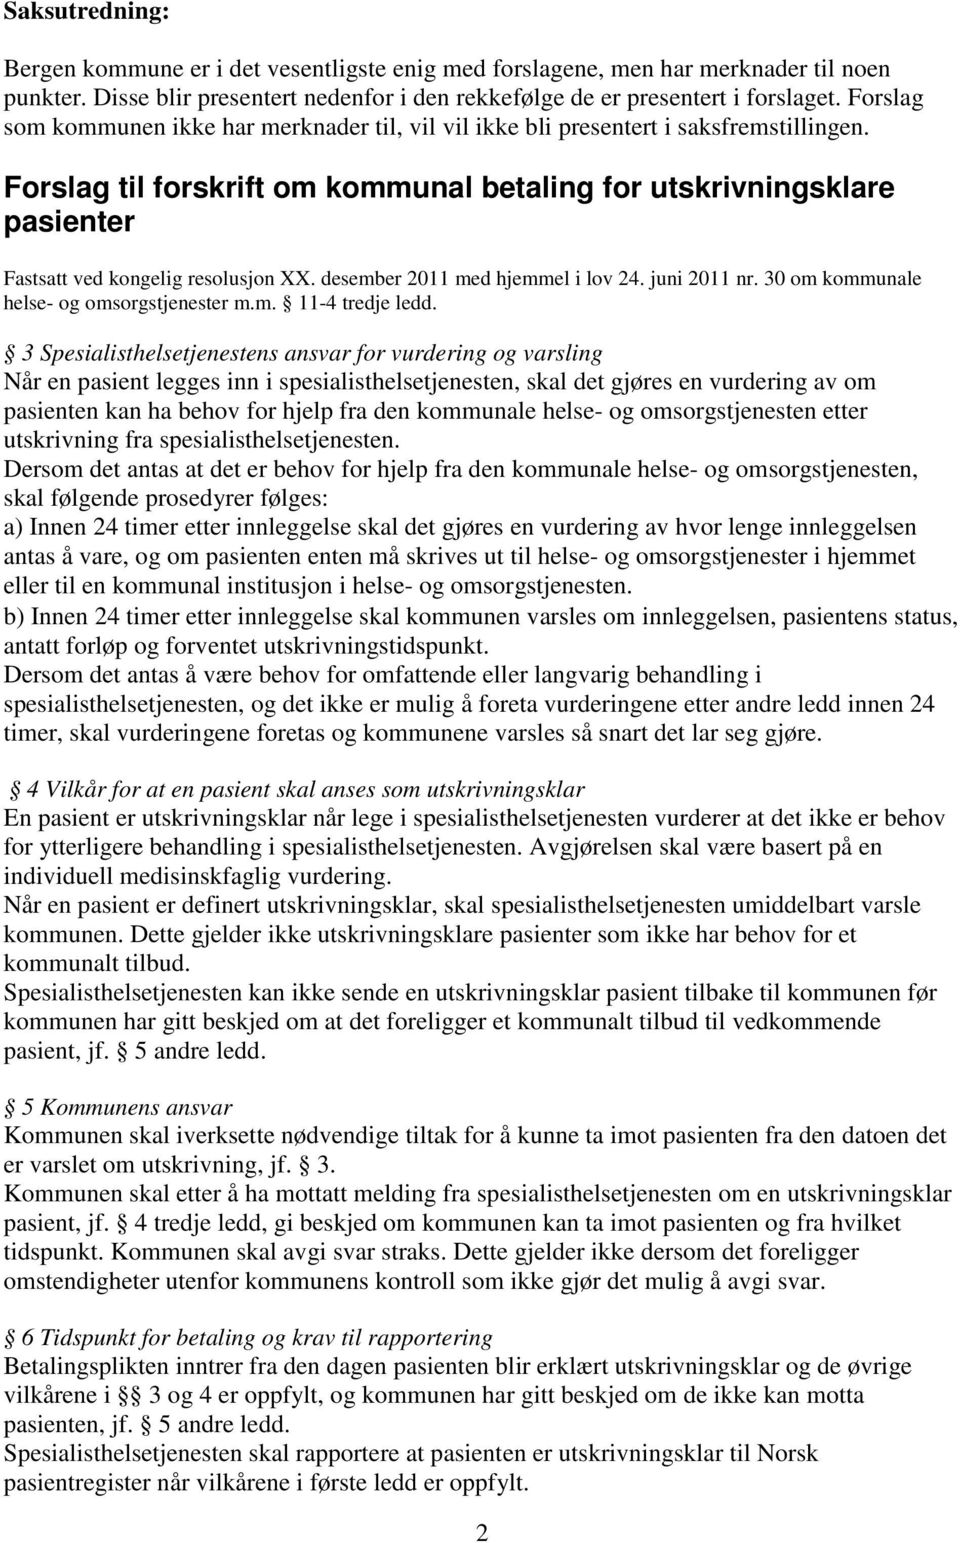 Forslag til forskrift om kommunal betaling for utskrivningsklare pasienter Fastsatt ved kongelig resolusjon XX. desember 2011 med hjemmel i lov 24. juni 2011 nr.